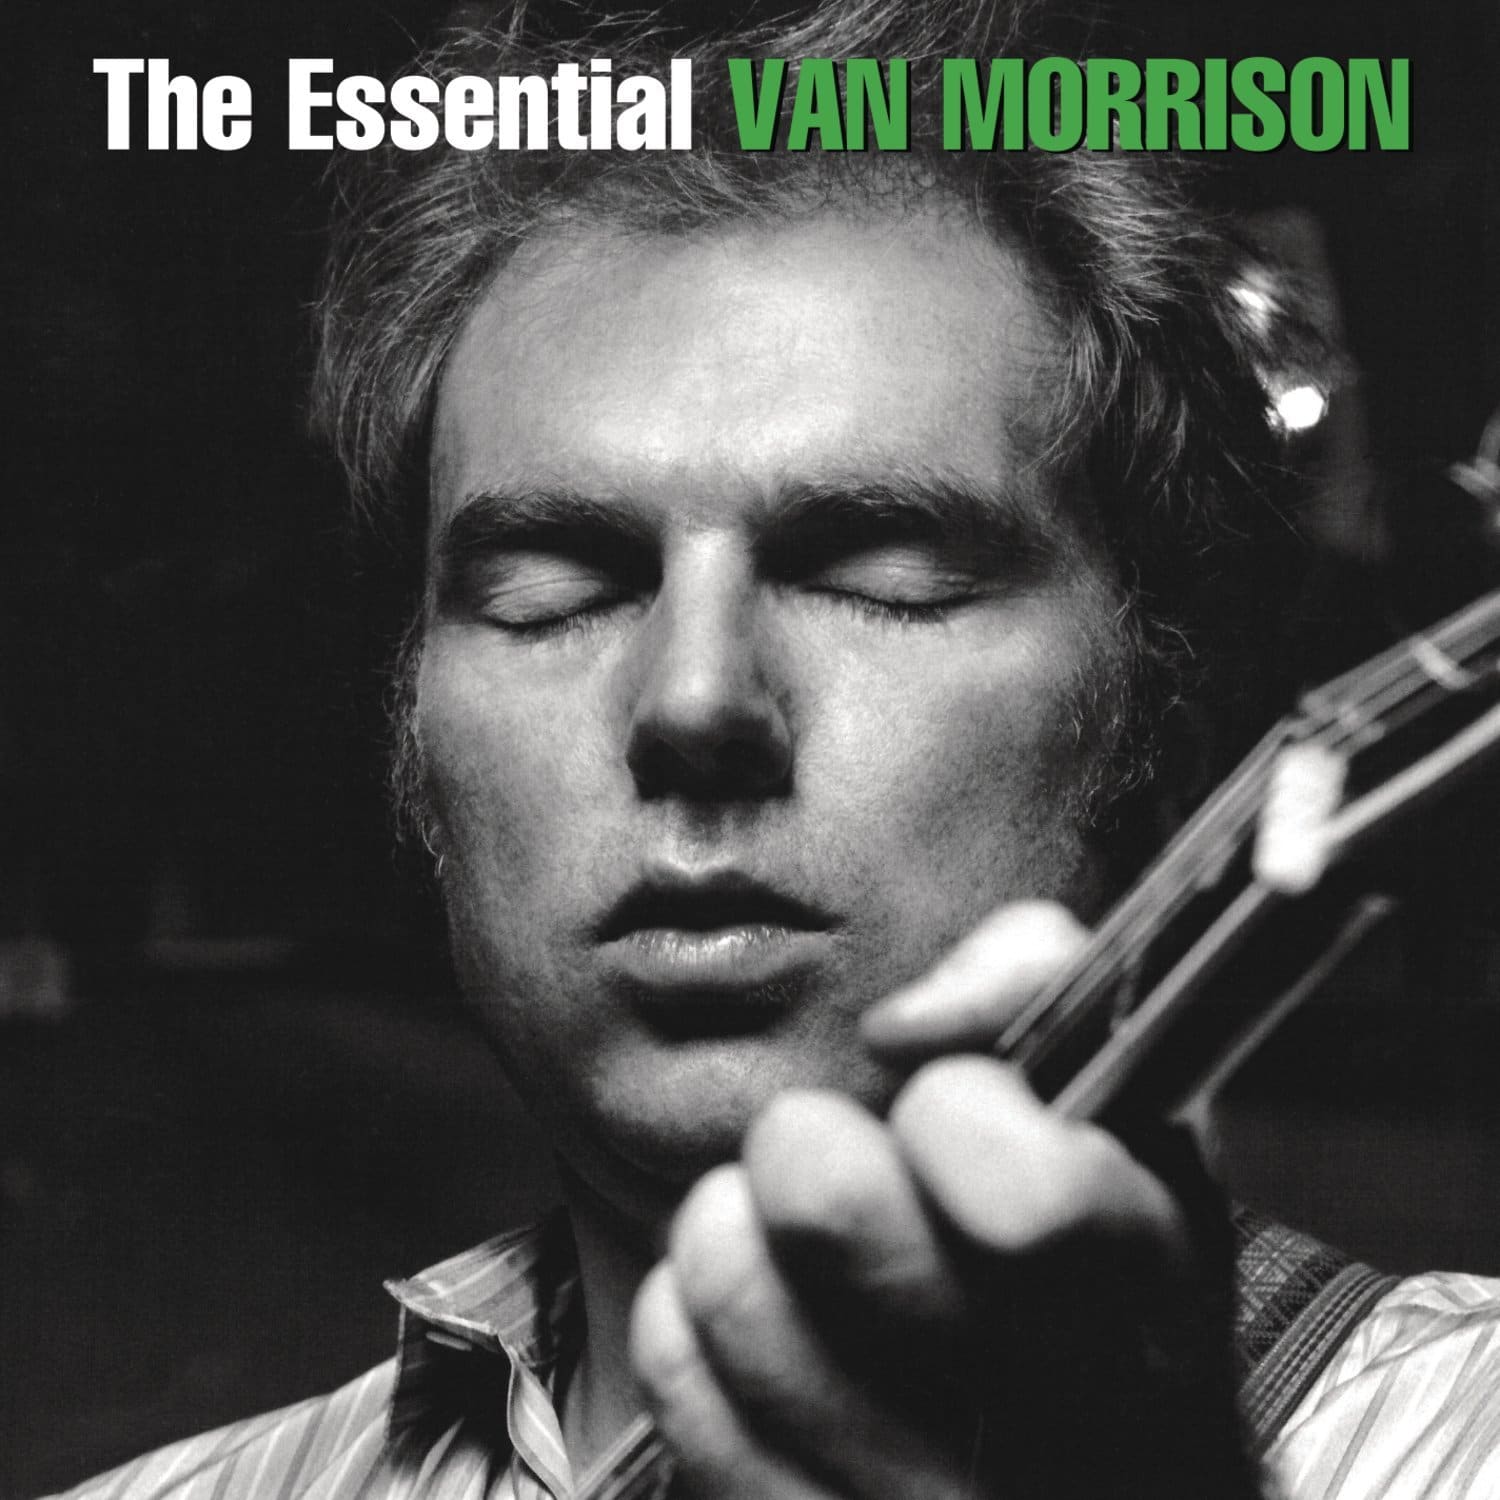 Van Morrison: The Essential Van Morrison